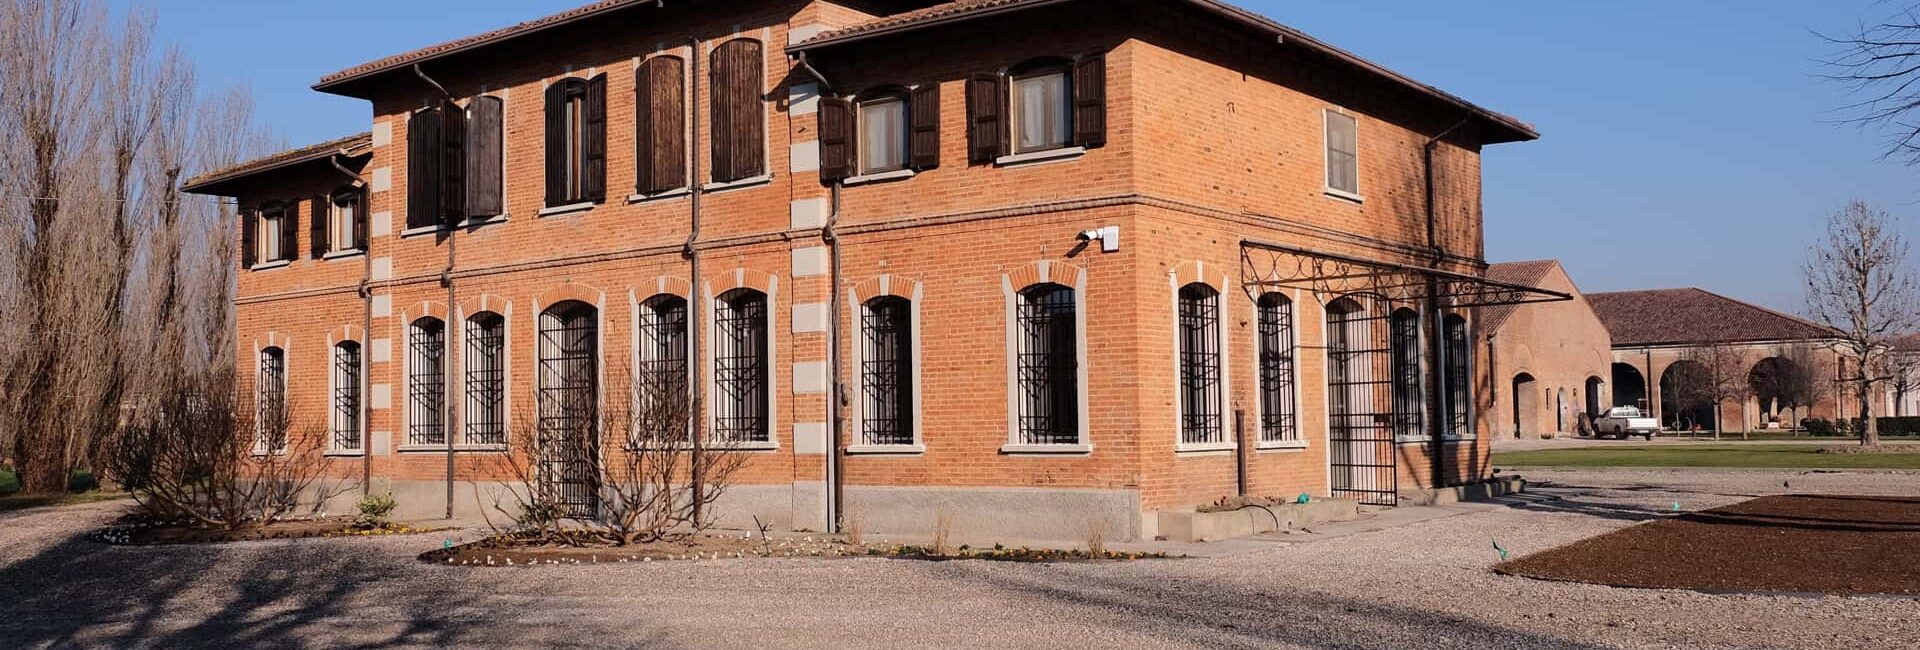 Installazione serramenti interni in legno, Portoncino ingresso e Porte interne Mantova 15